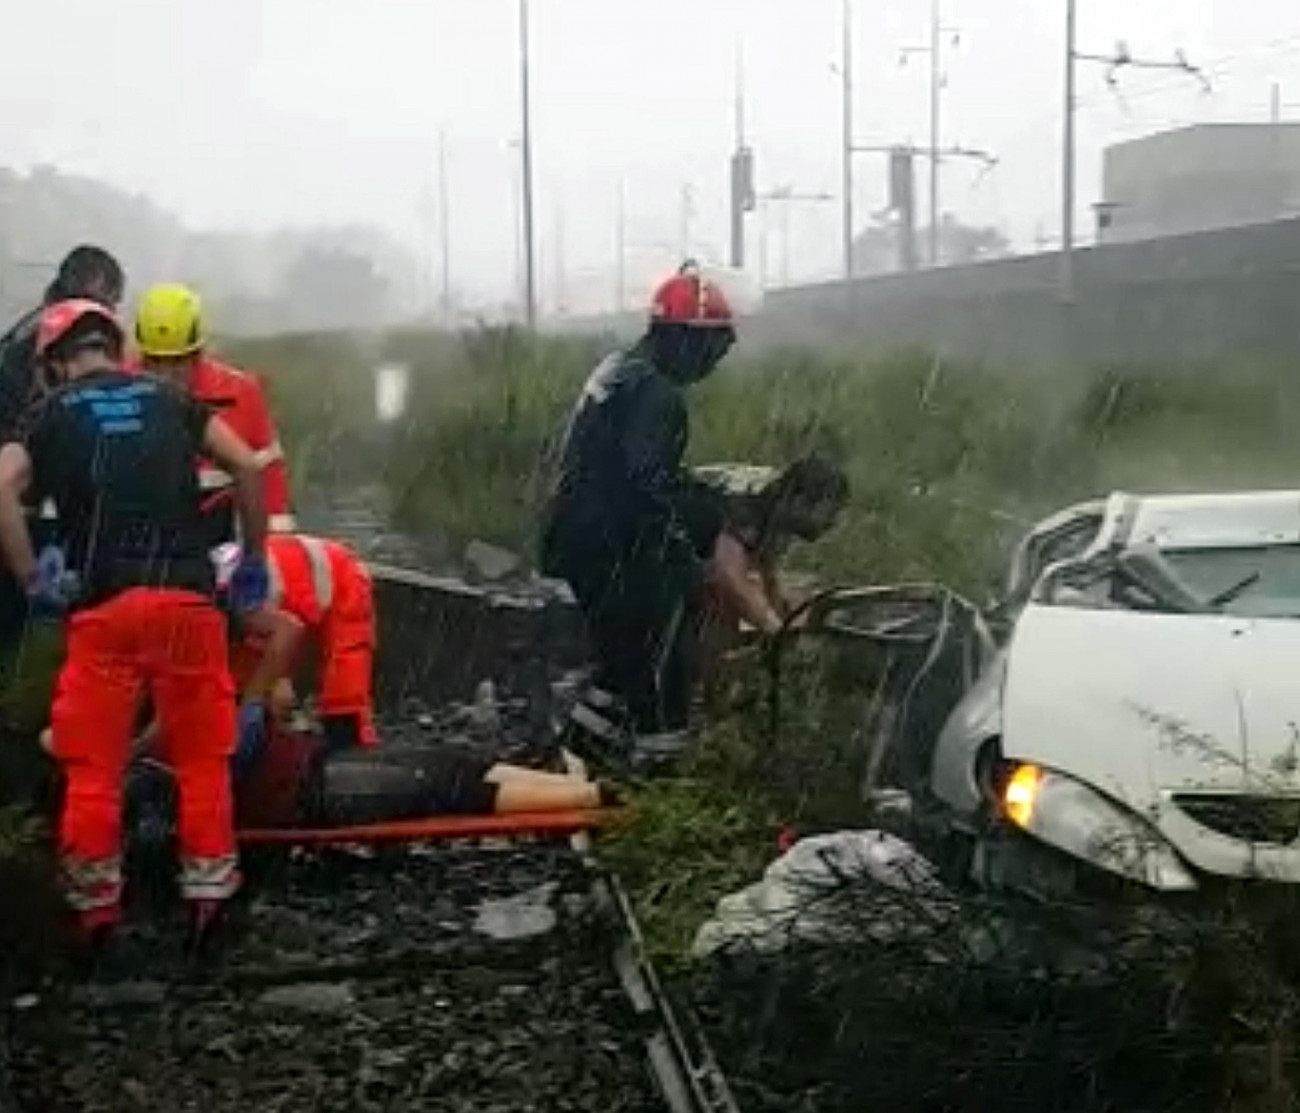 Genova, 2018. augusztus 14.
Az olasz tűzoltóság által közreadott képen mentőalakulatok tagjai dolgoznak a baleset helyszínén Genova közelében 2018. augusztus 14-én, miután leszakadt az A10-es autópálya egyik hídjának egy része. A balesetnek több tucat halottja van. (MTI/EPA/Olasz tűzoltóság)